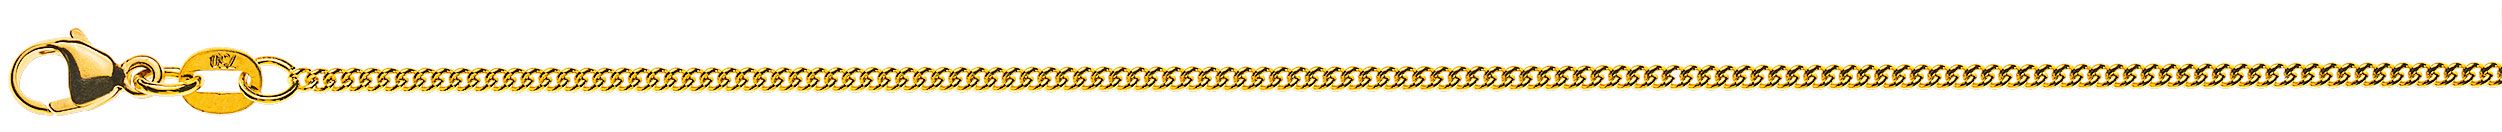 AURONOS Prestige Halskette Gelbgold 18K Rundpanzerkette 60cm 1.6mm